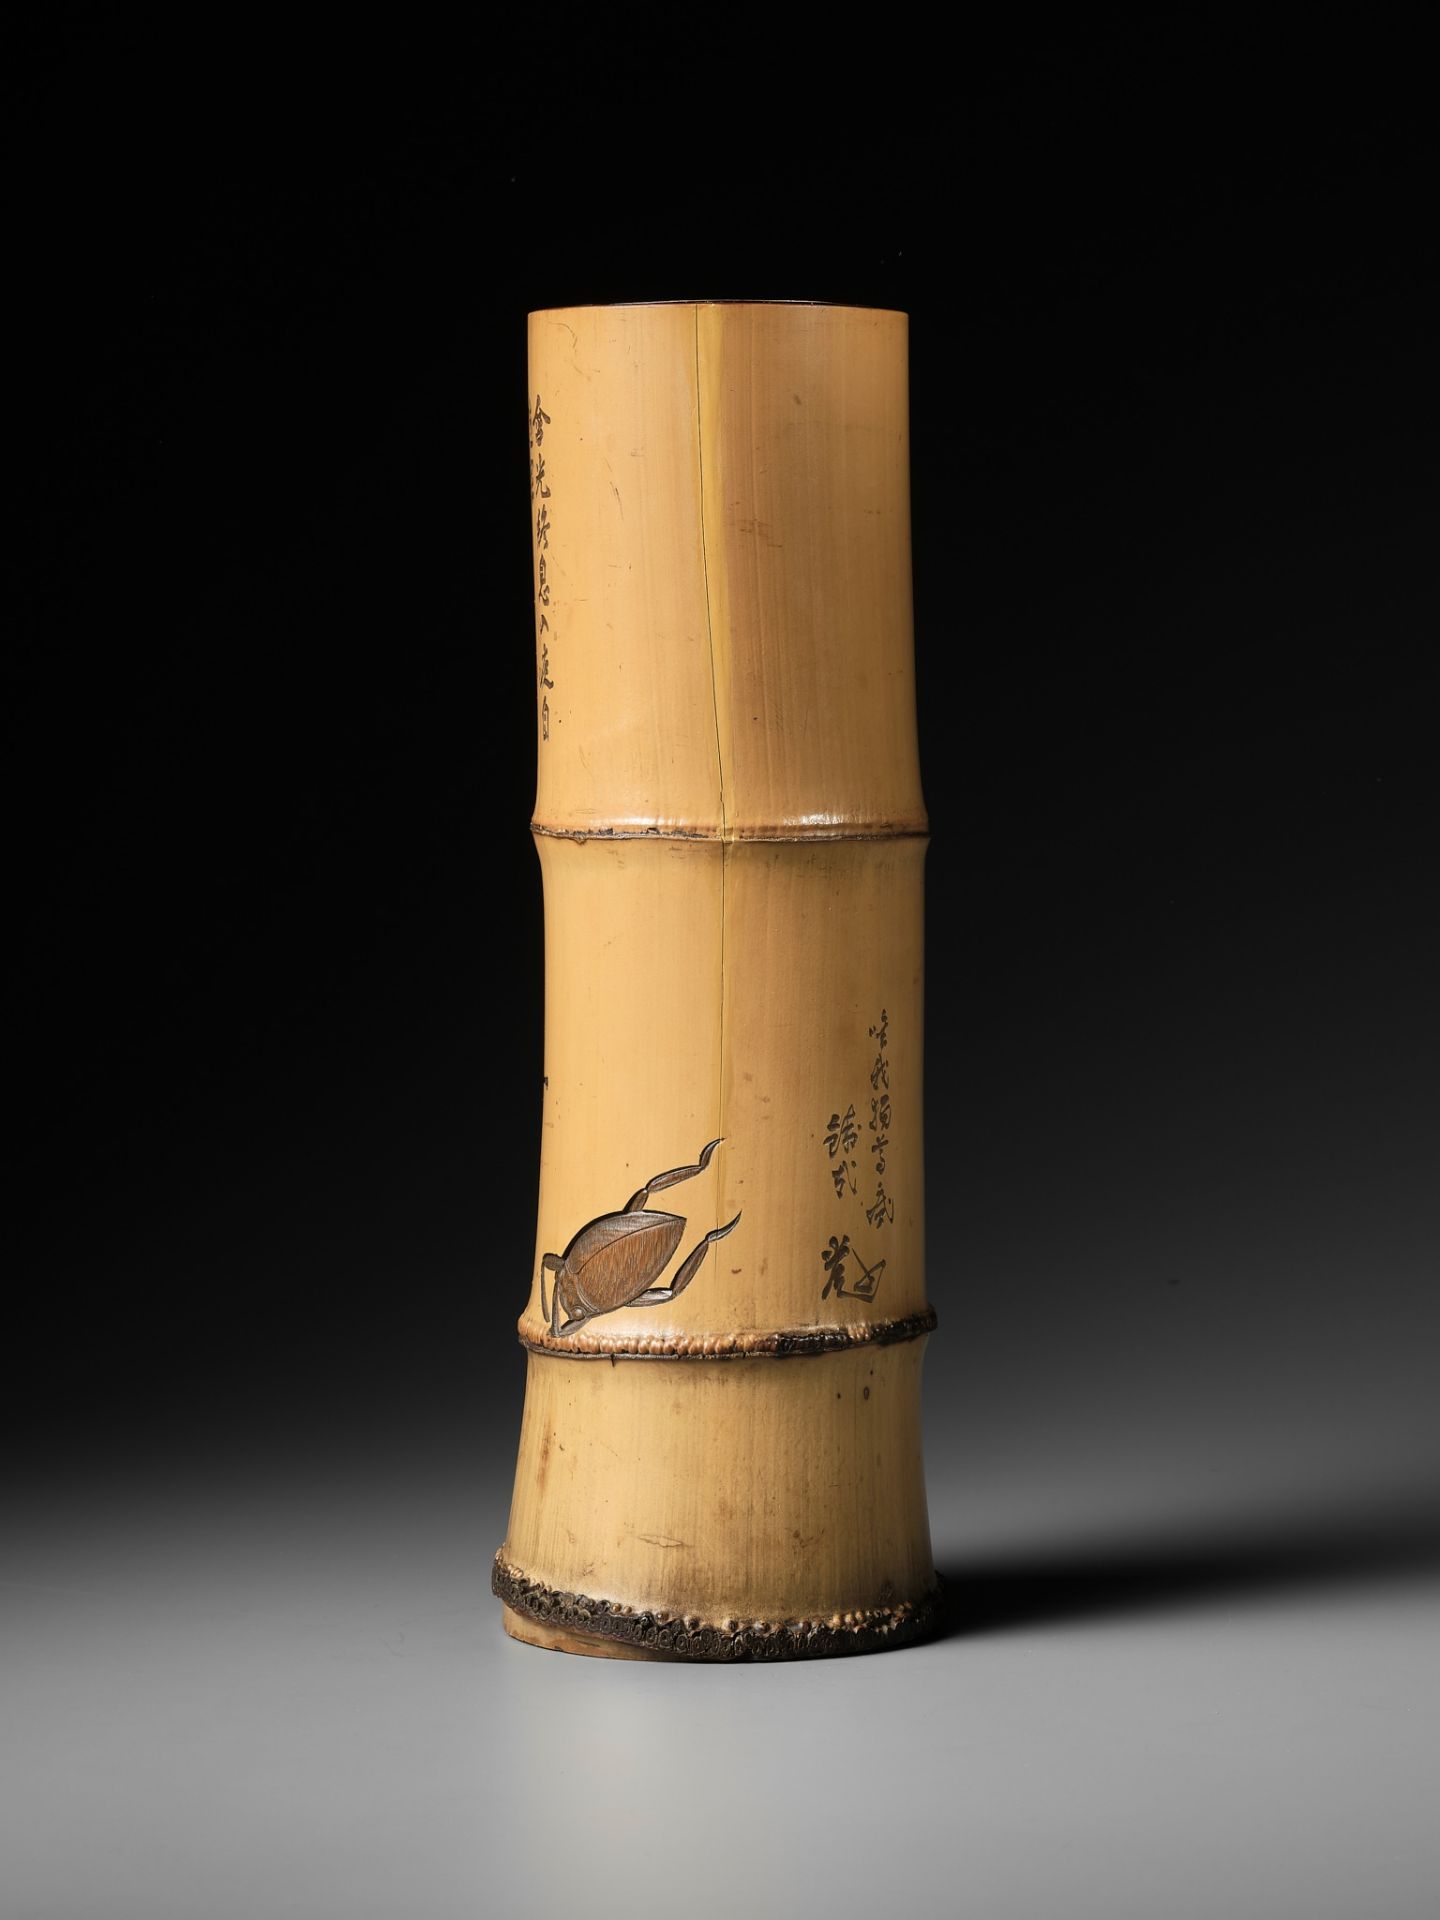 KANO TESSAI: A BAMBOO BRUSHPOT WITH KANSHI POEMS - Image 3 of 13